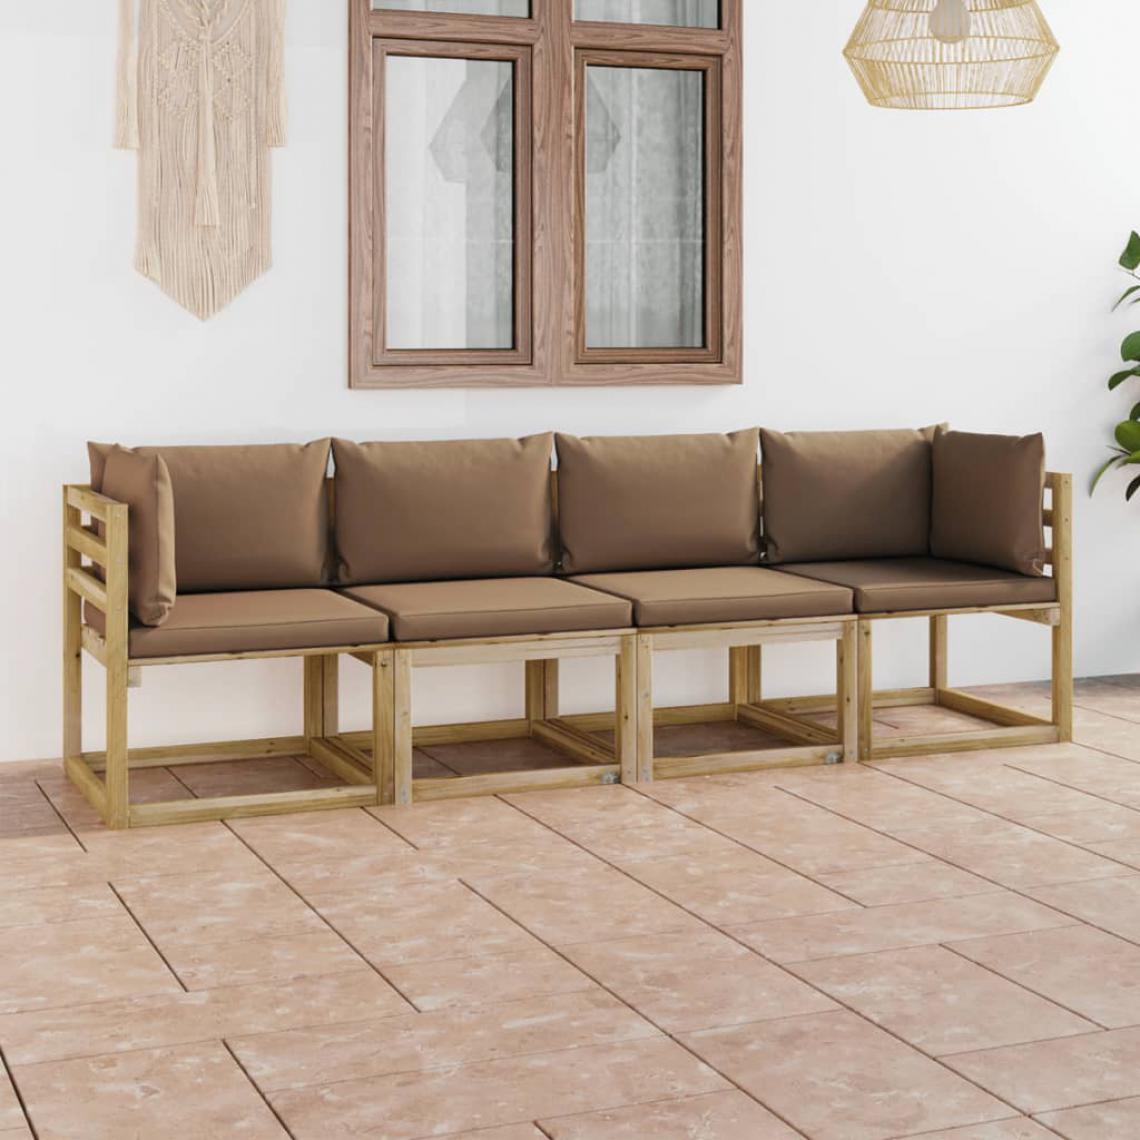 Chunhelife - Canapé de jardin 4 places avec coussins taupe - Ensembles canapés et fauteuils